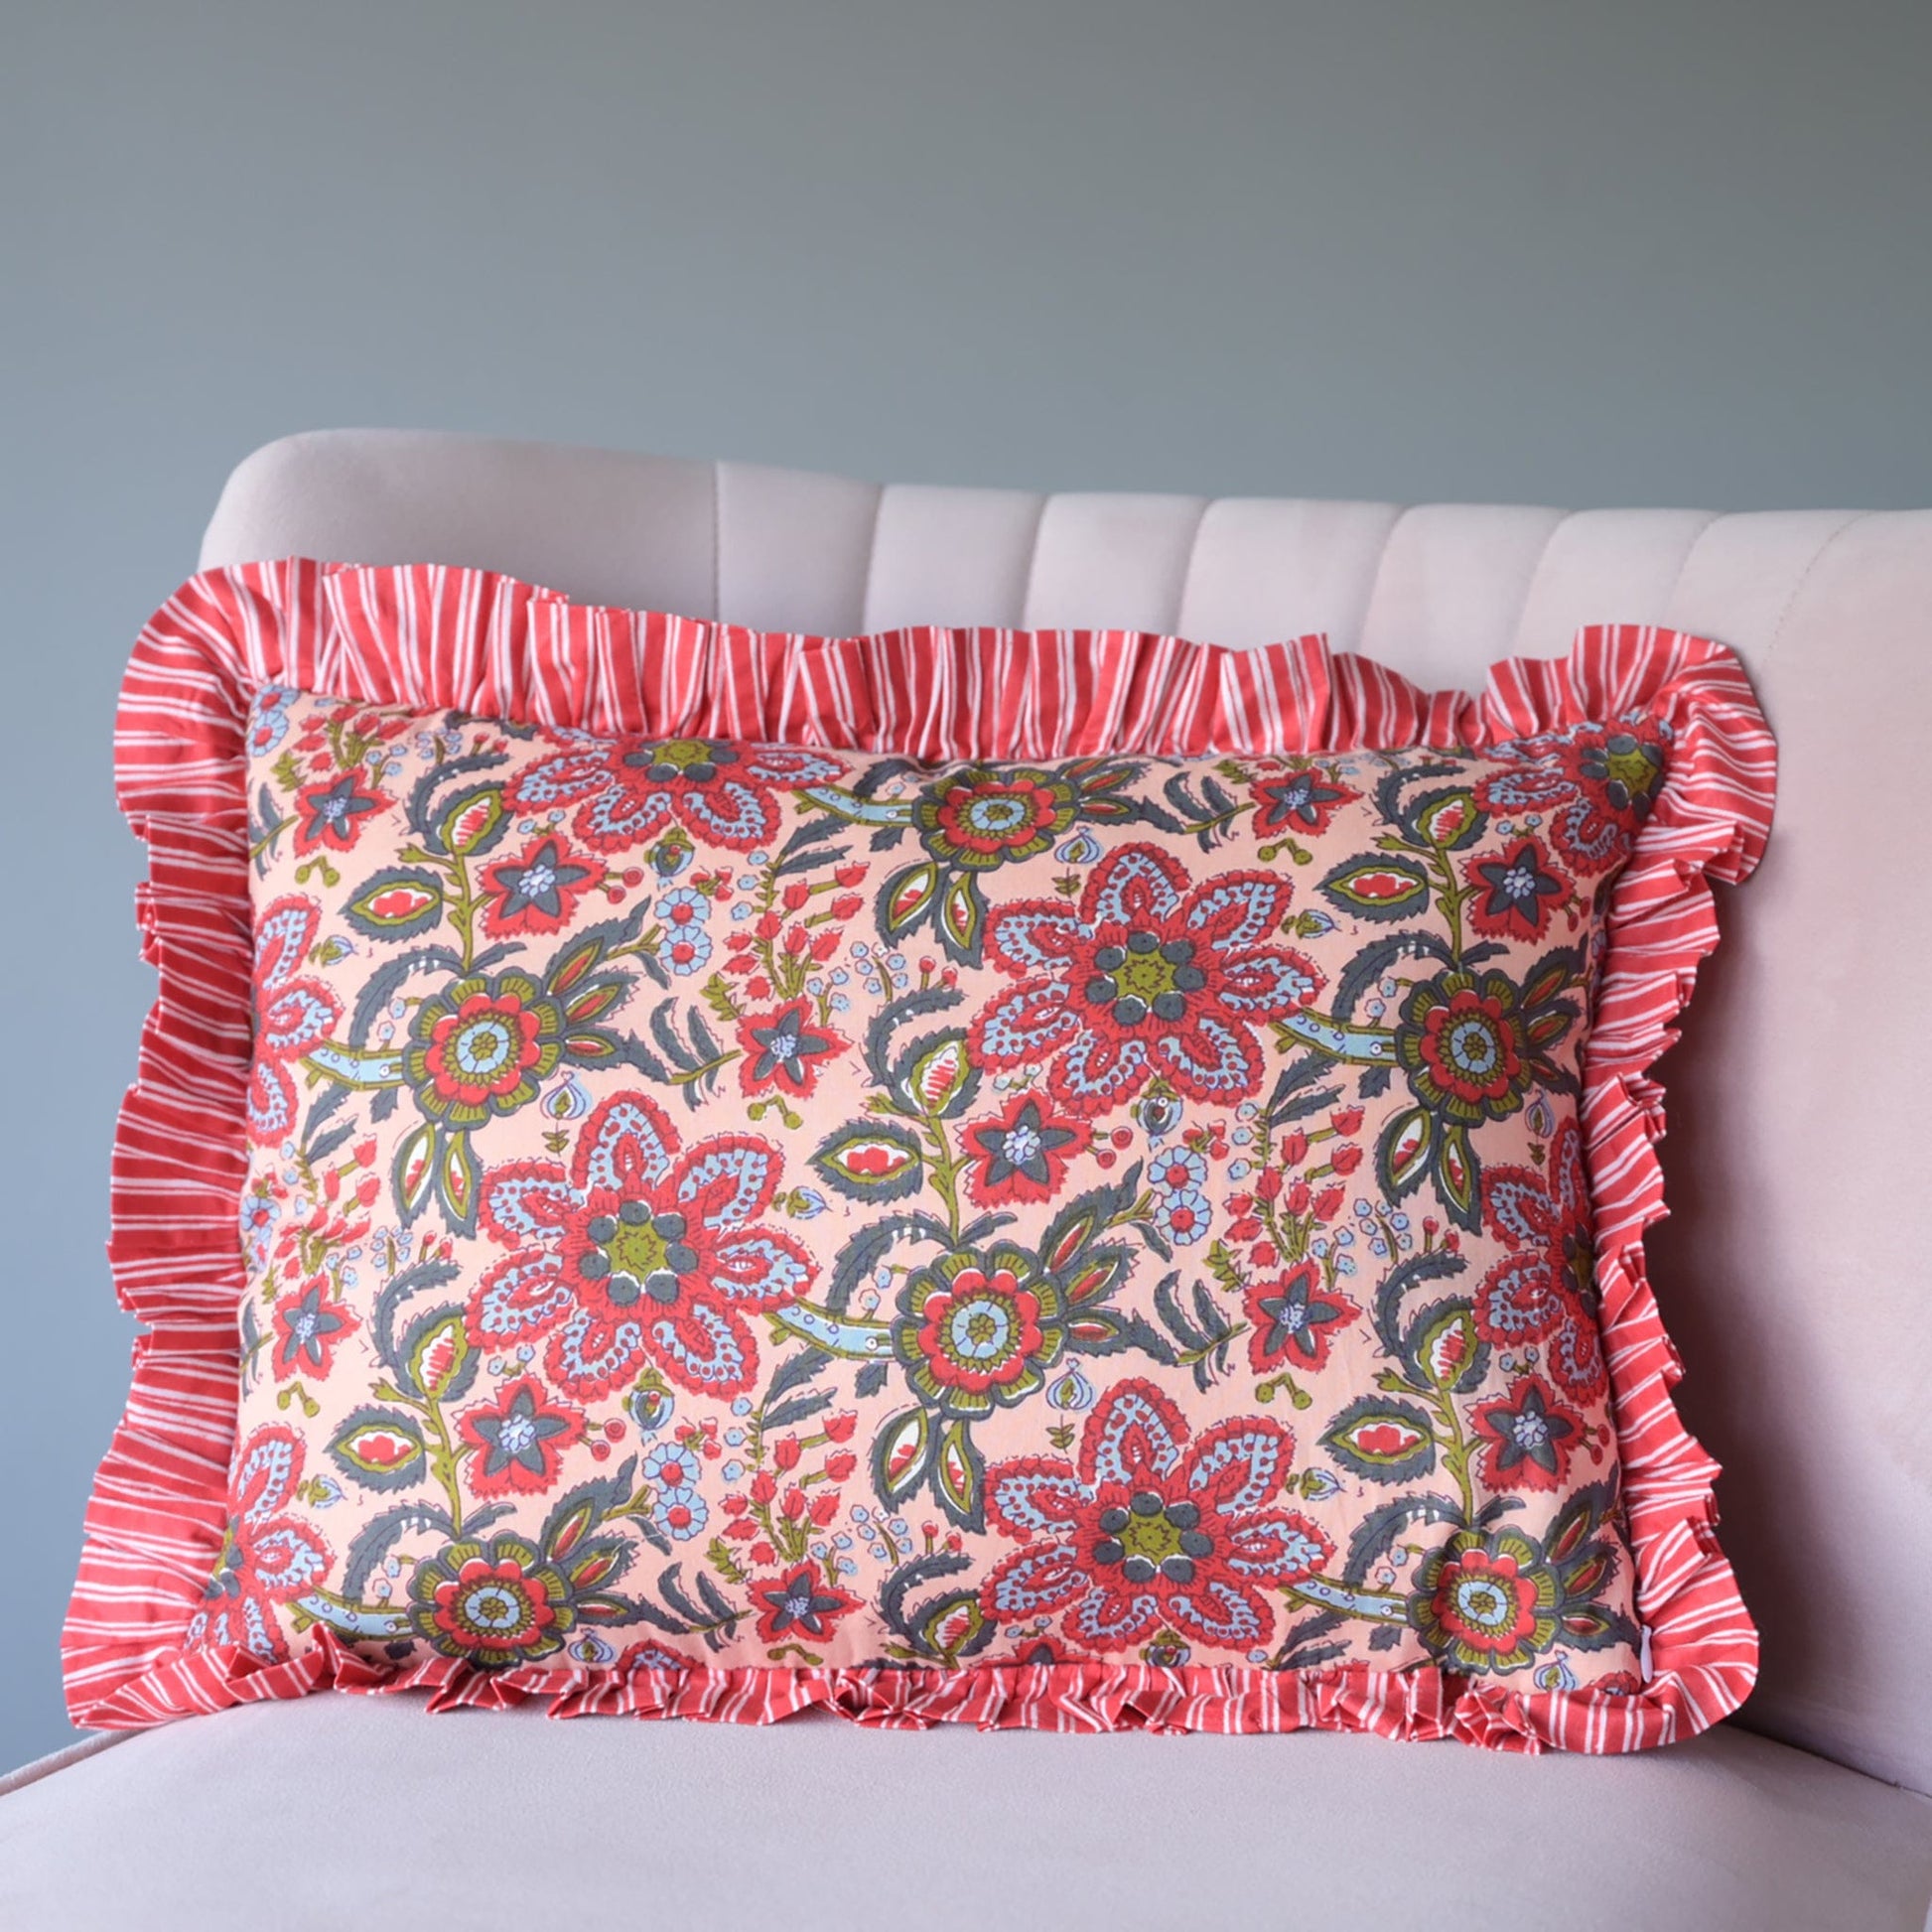 Chippa Arts (Nitin) Cushions Small Ruffle Cushion - Red Floral on Peach 19127